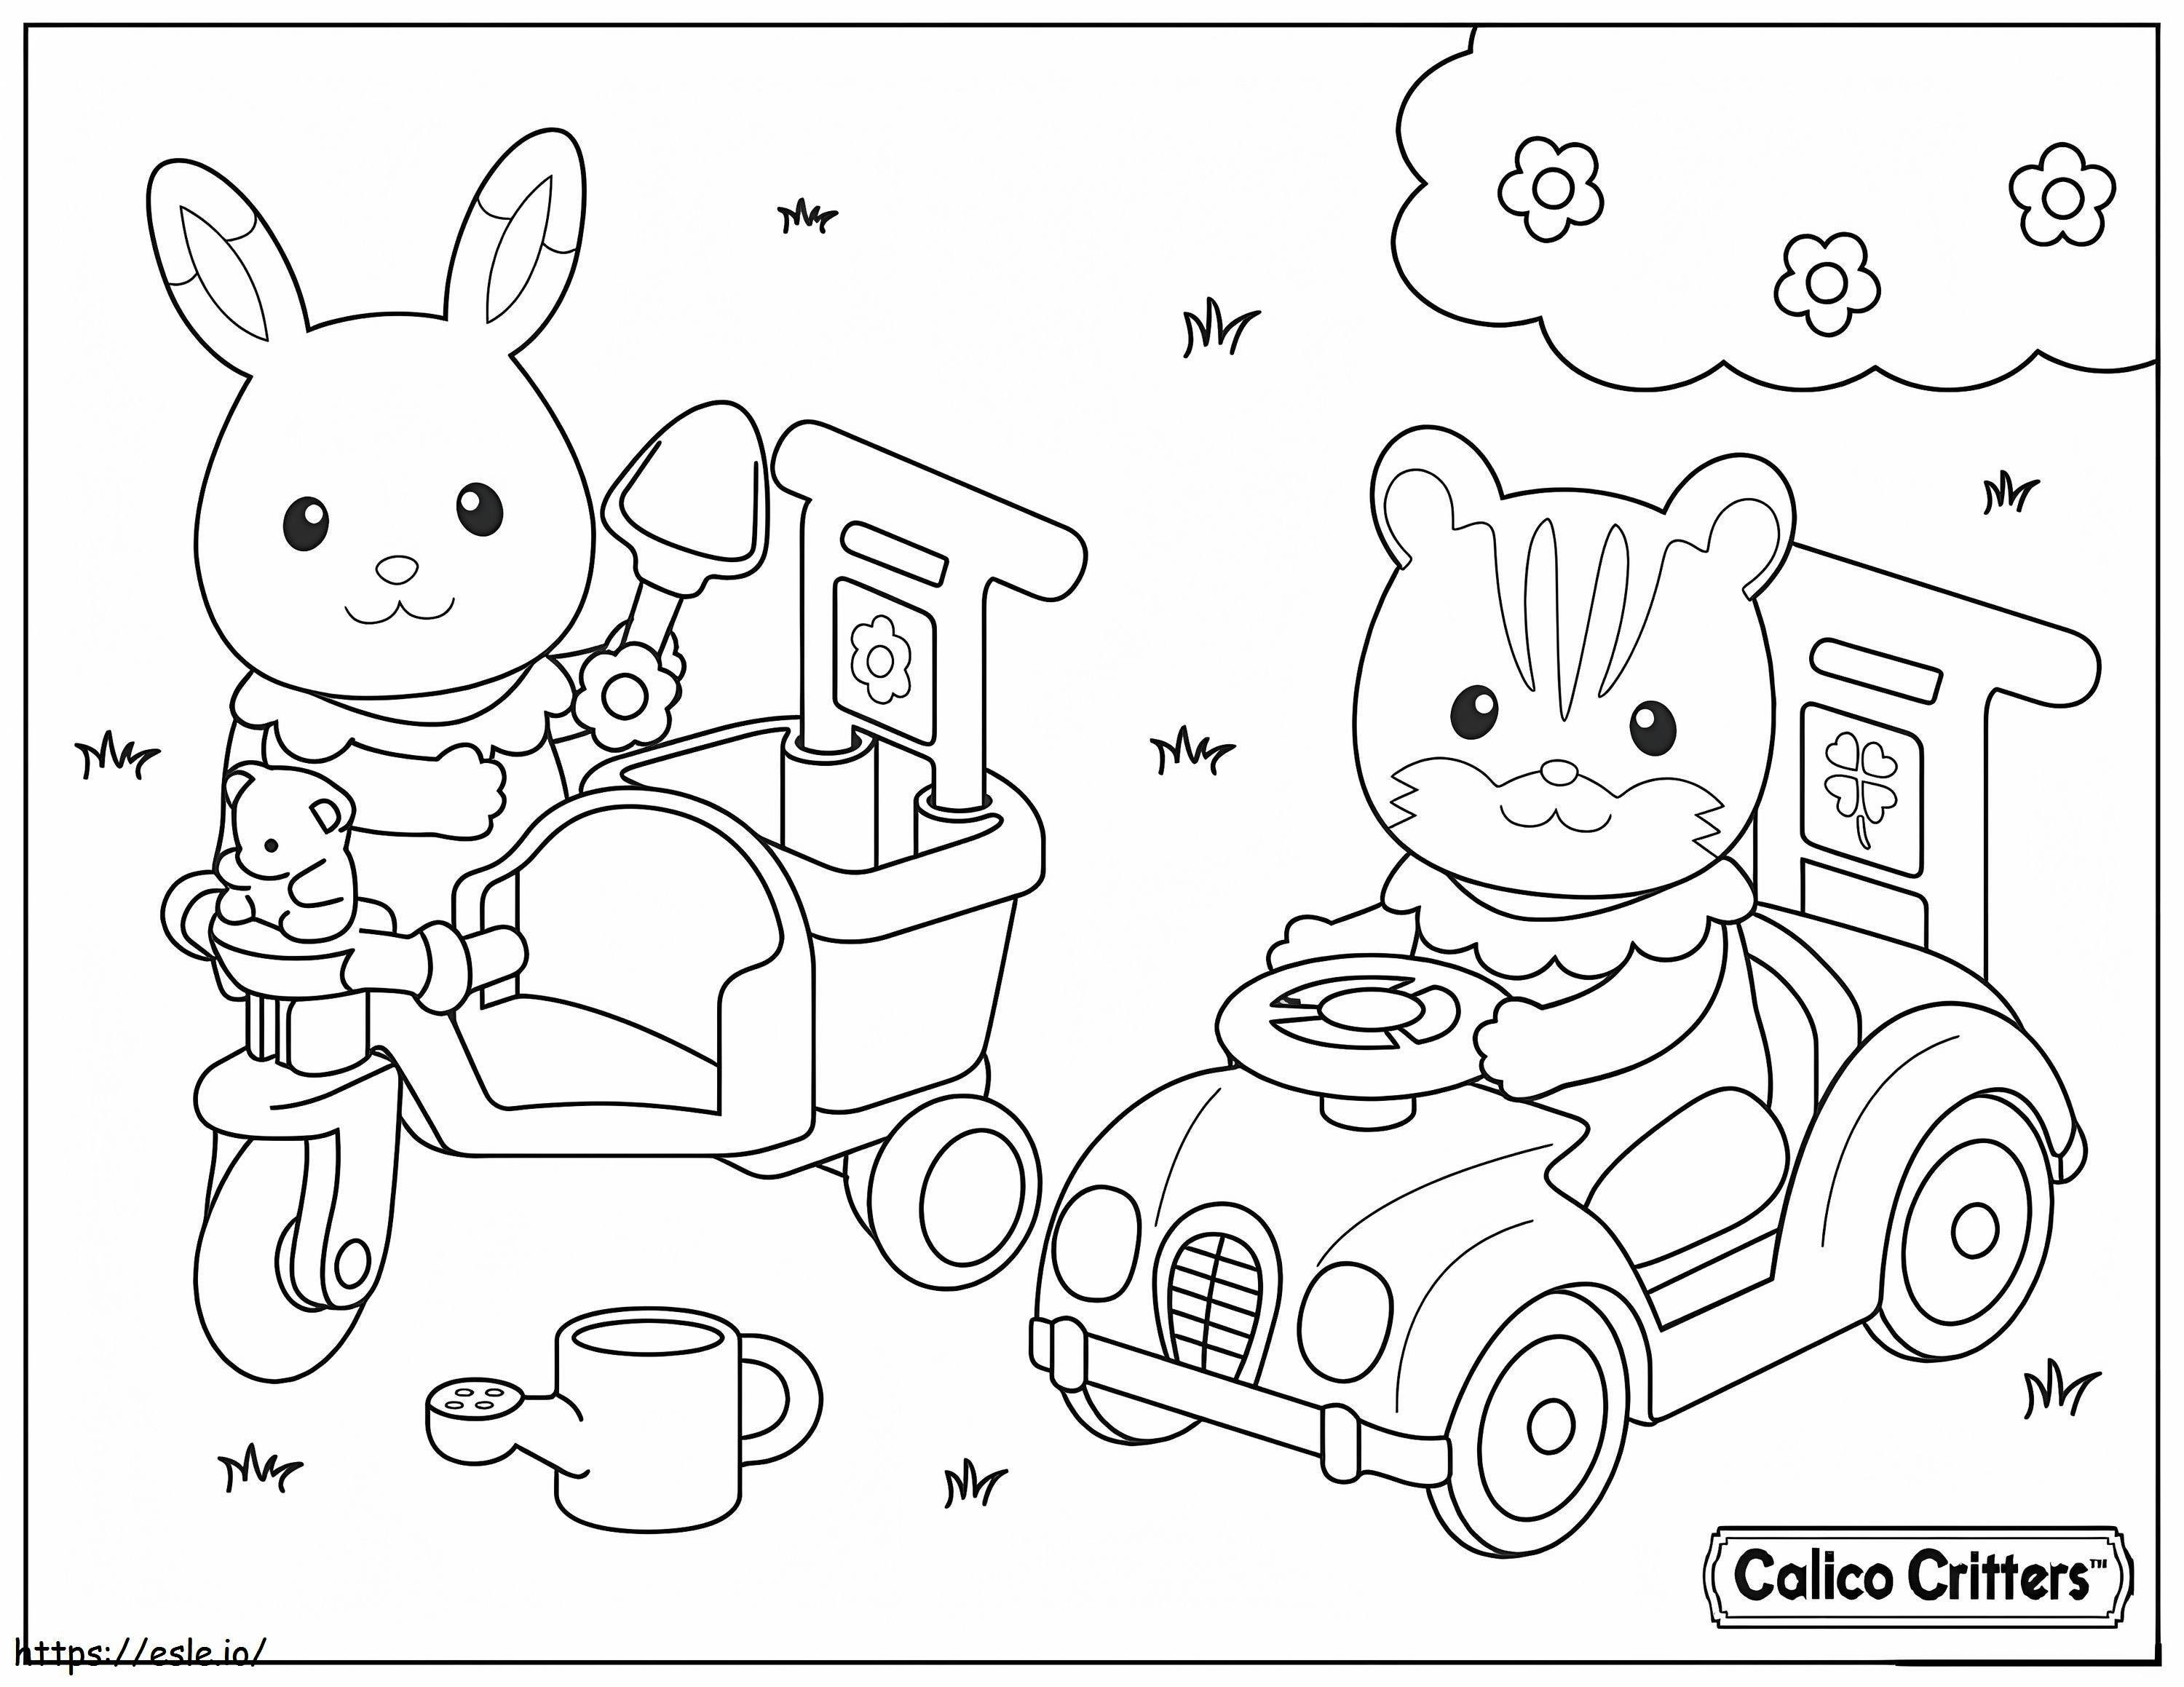 1591838477 1515174988Calico Critters dirigem carro com amigo para colorir